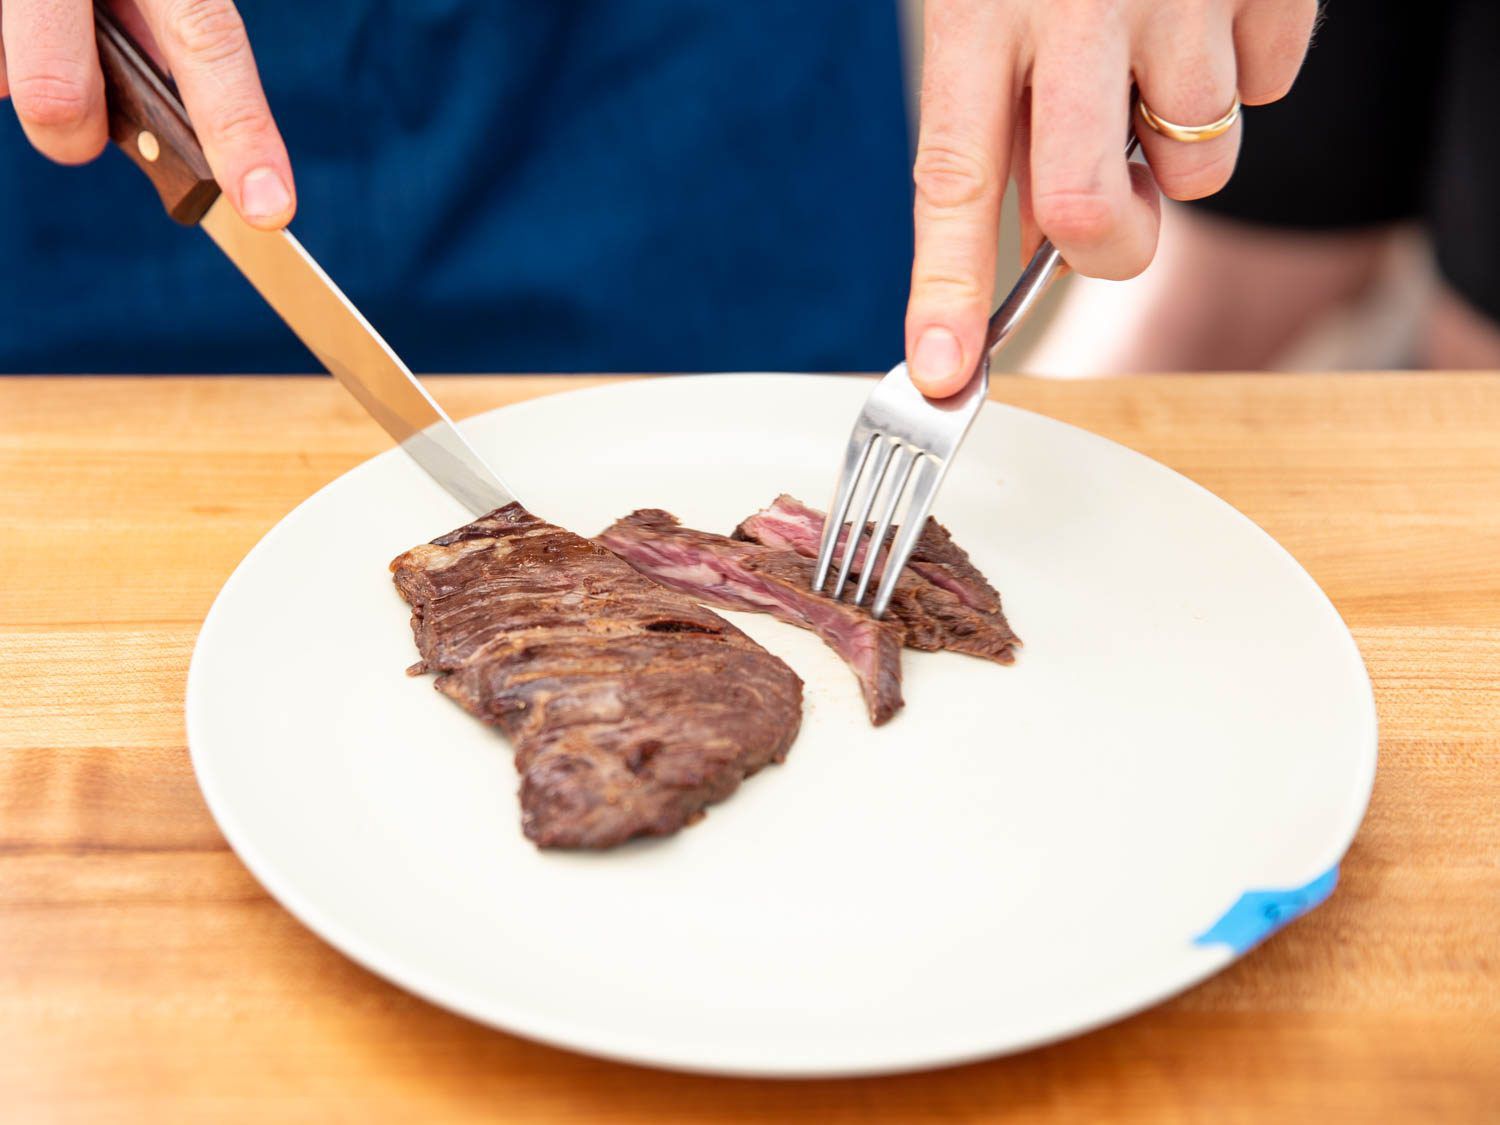 用牛排刀切成一块半熟的牛排。